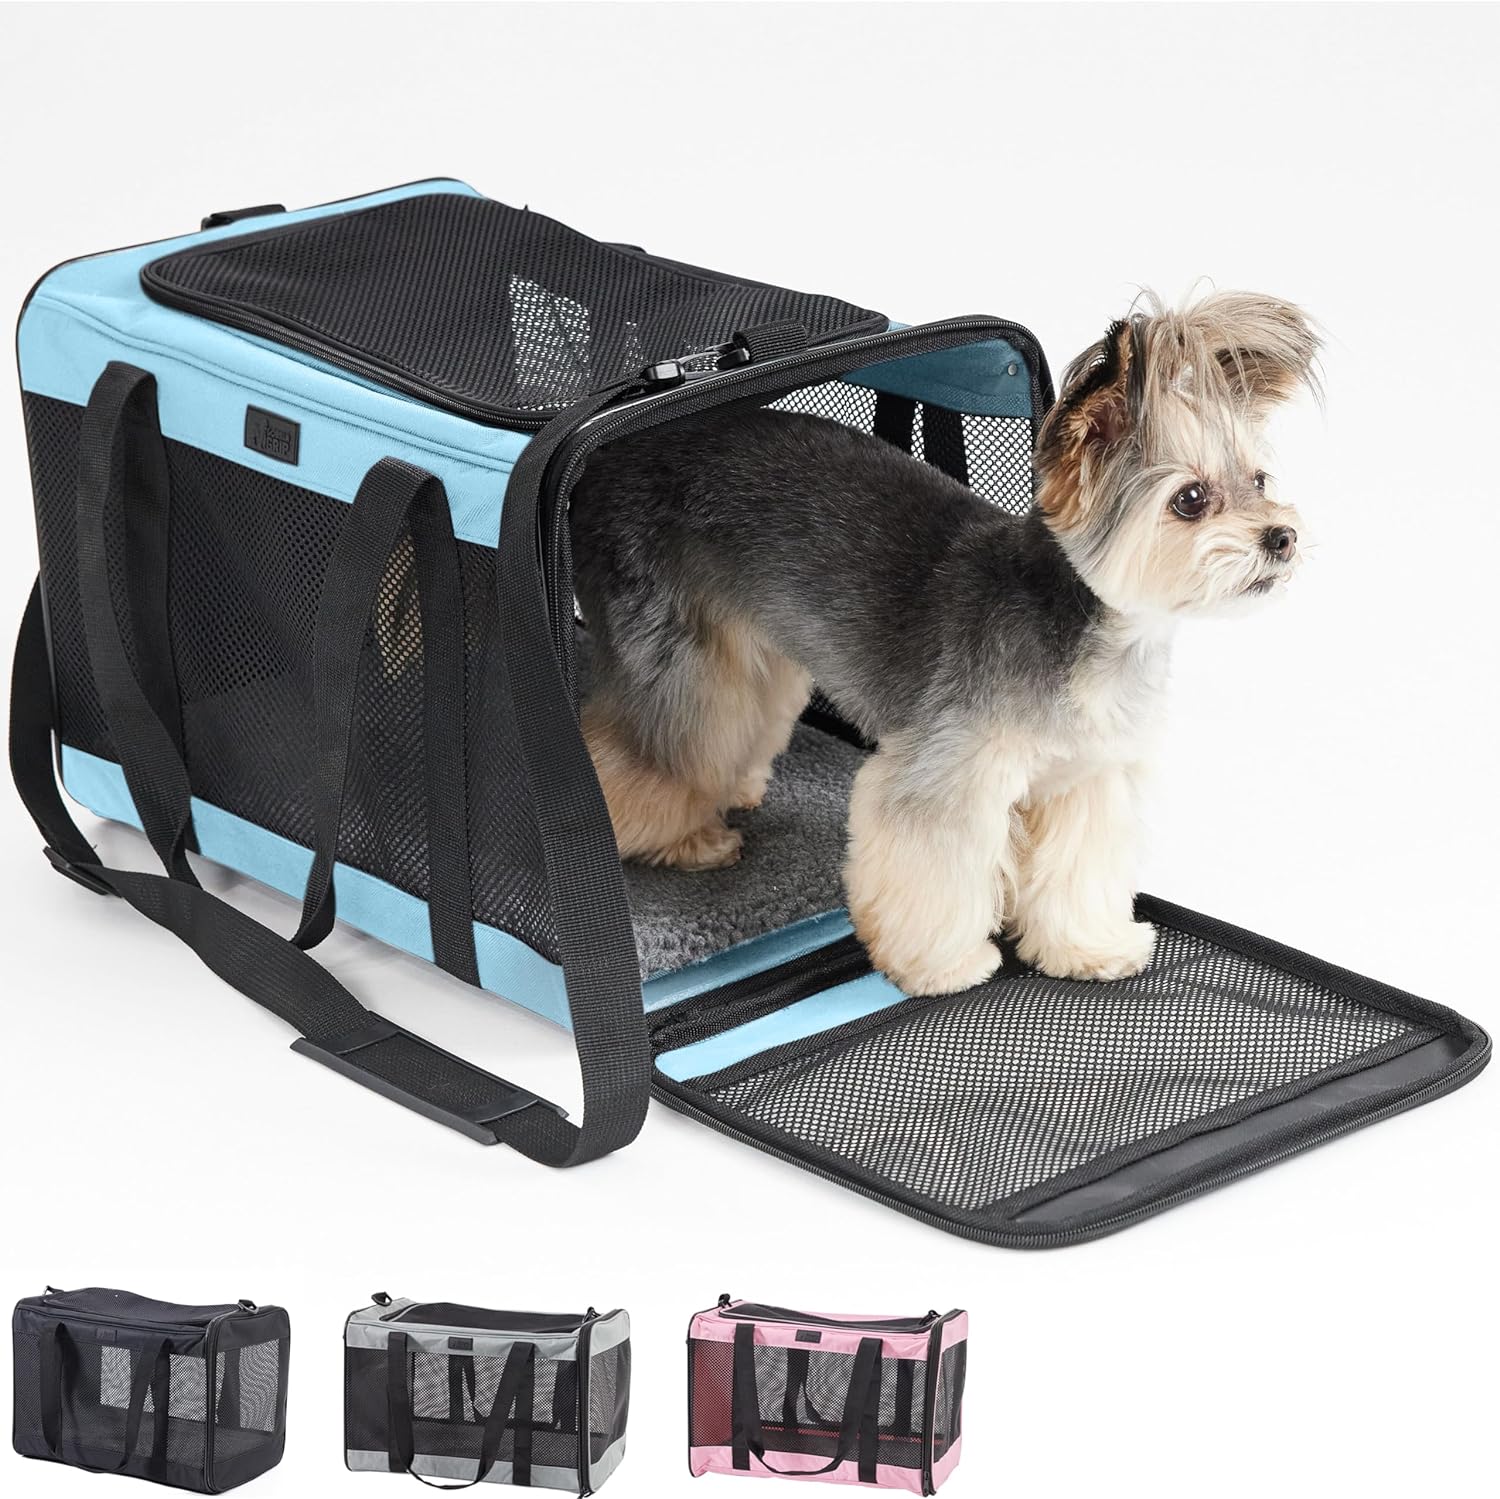 Gorilla Grip  Gorilla Grip Soft Travel Dog Cat Carrier Up to 25 LBS